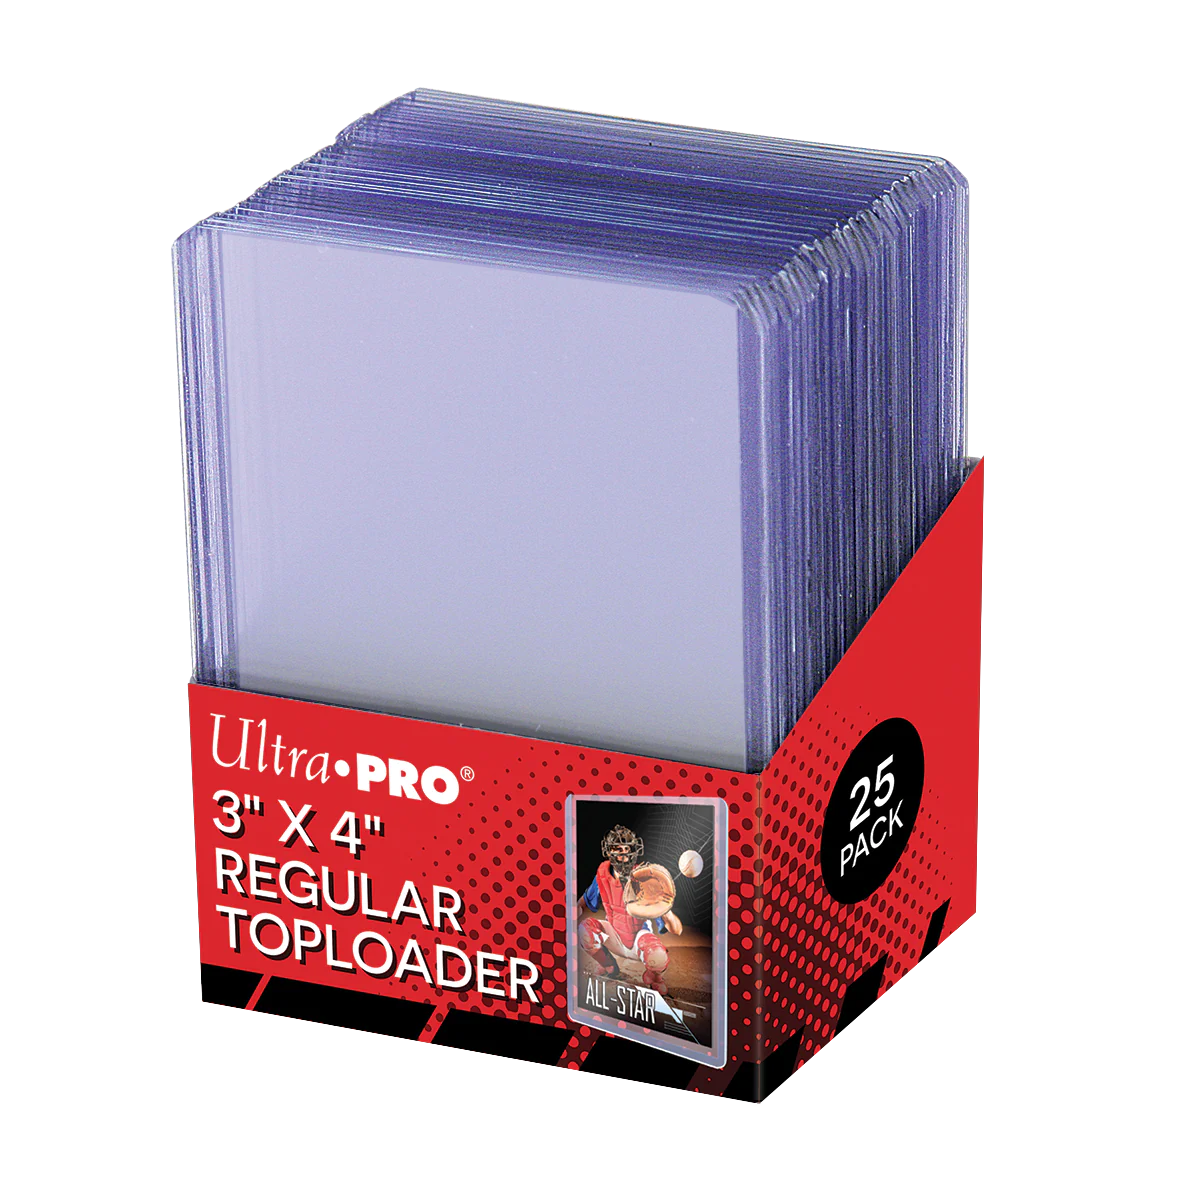 Toploader regular 3”x4” - 25er Pack